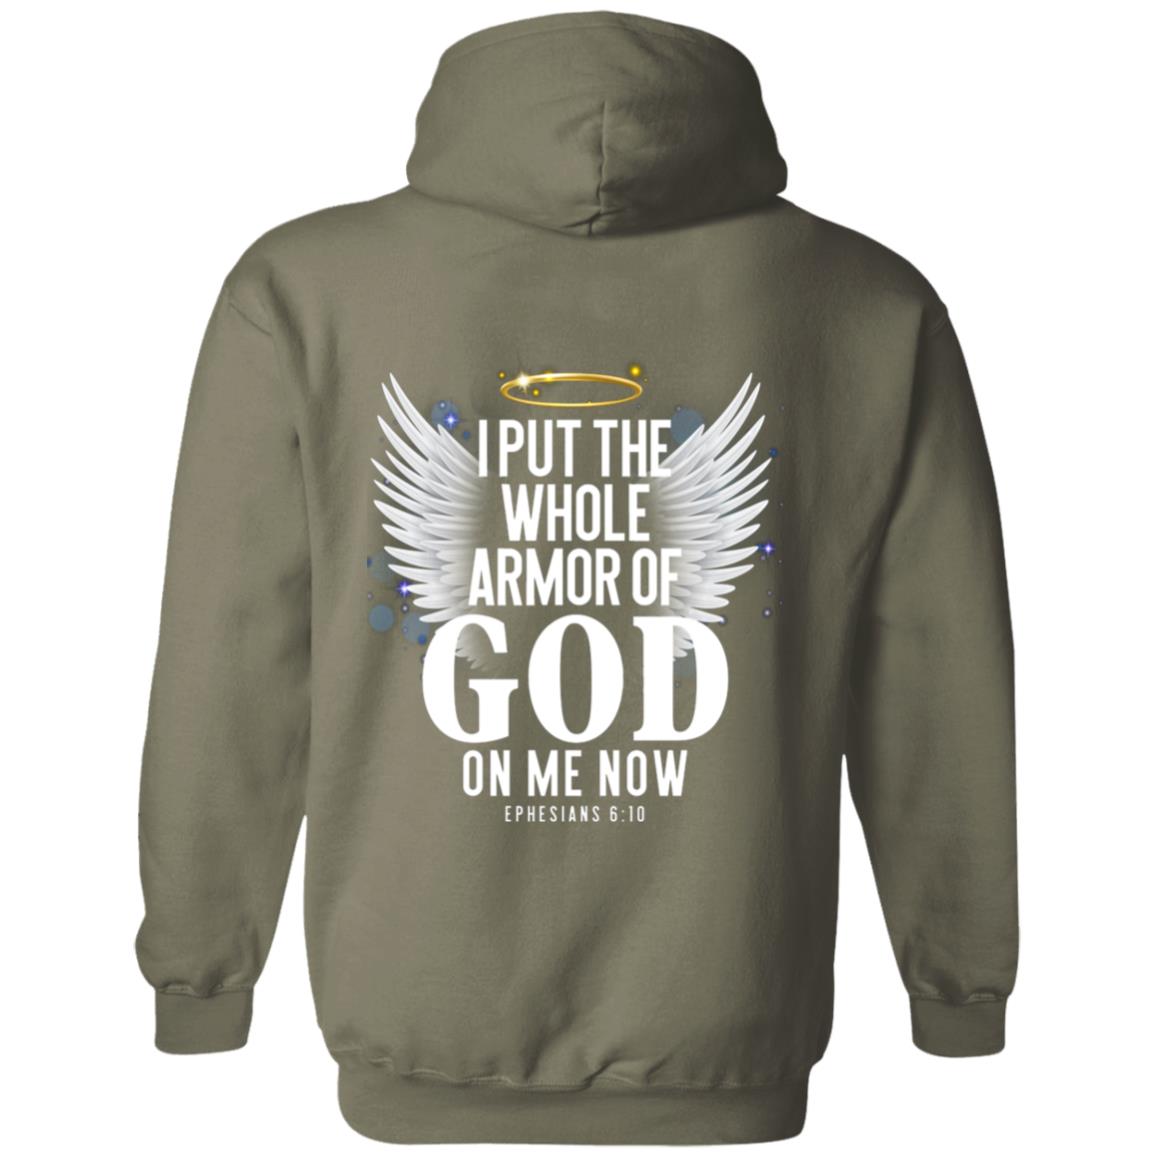 Armor of God Sweatshirt